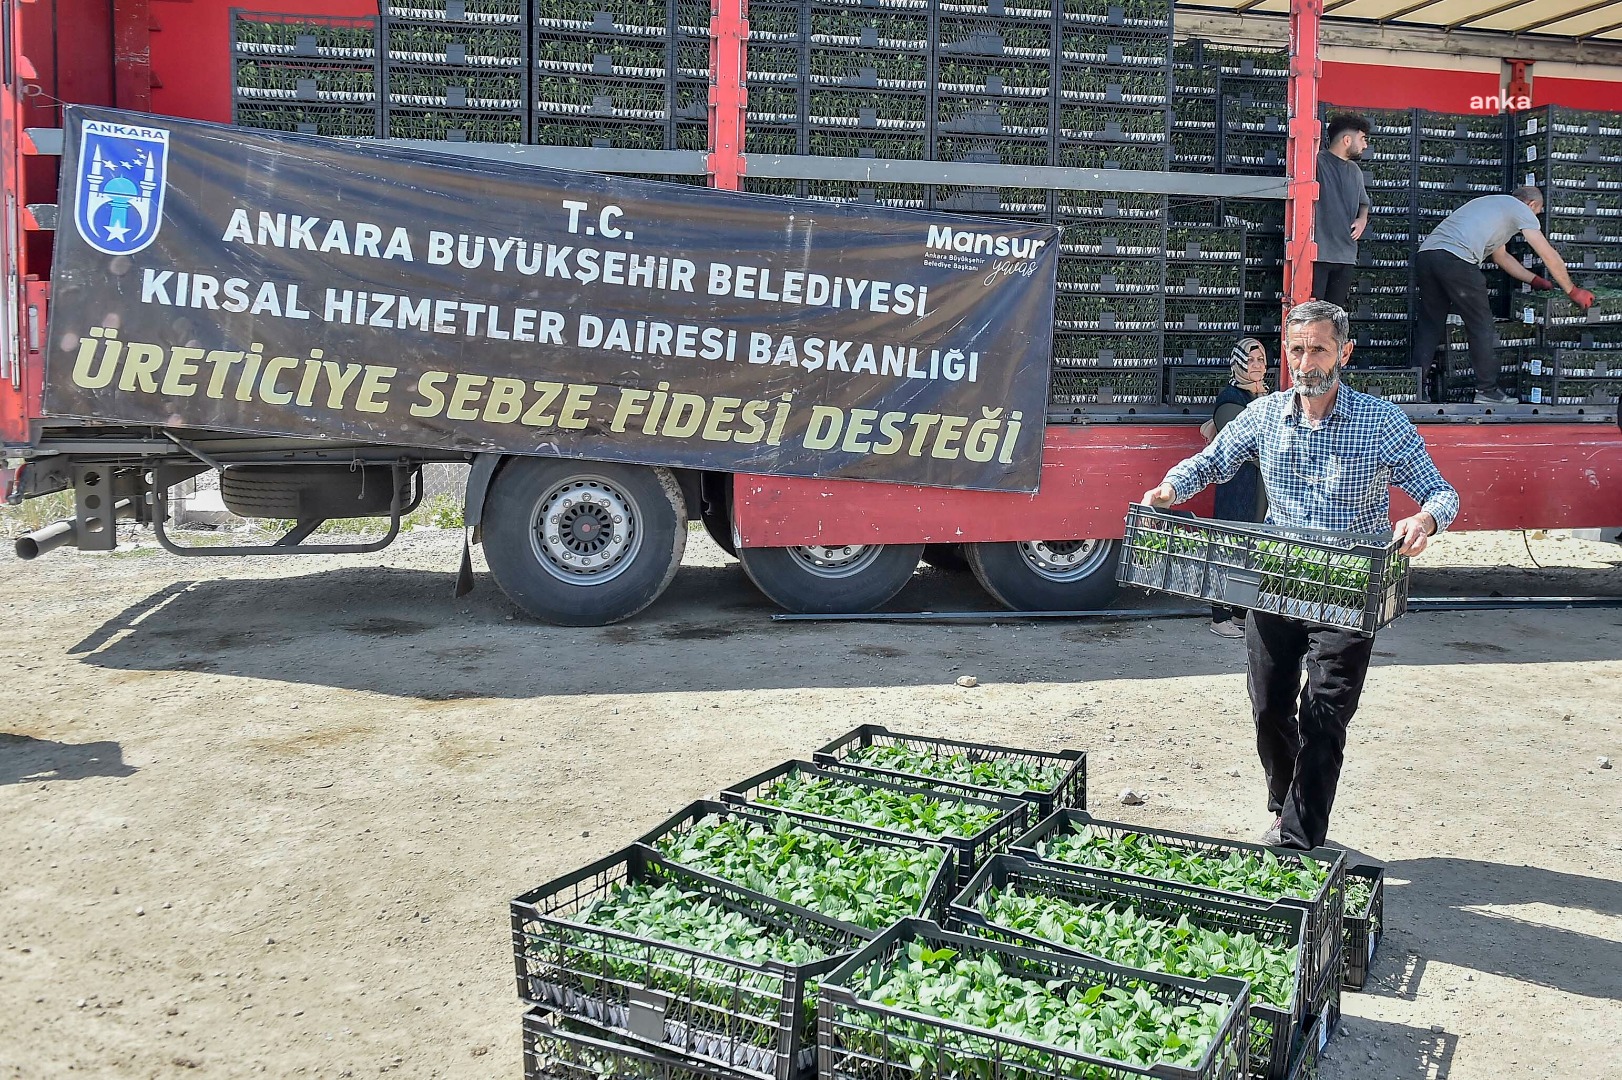 Ankara Büyükşehir Belediyesi’nden çiftçiye büyük destek 9,5 milyon fide dağıtıldı